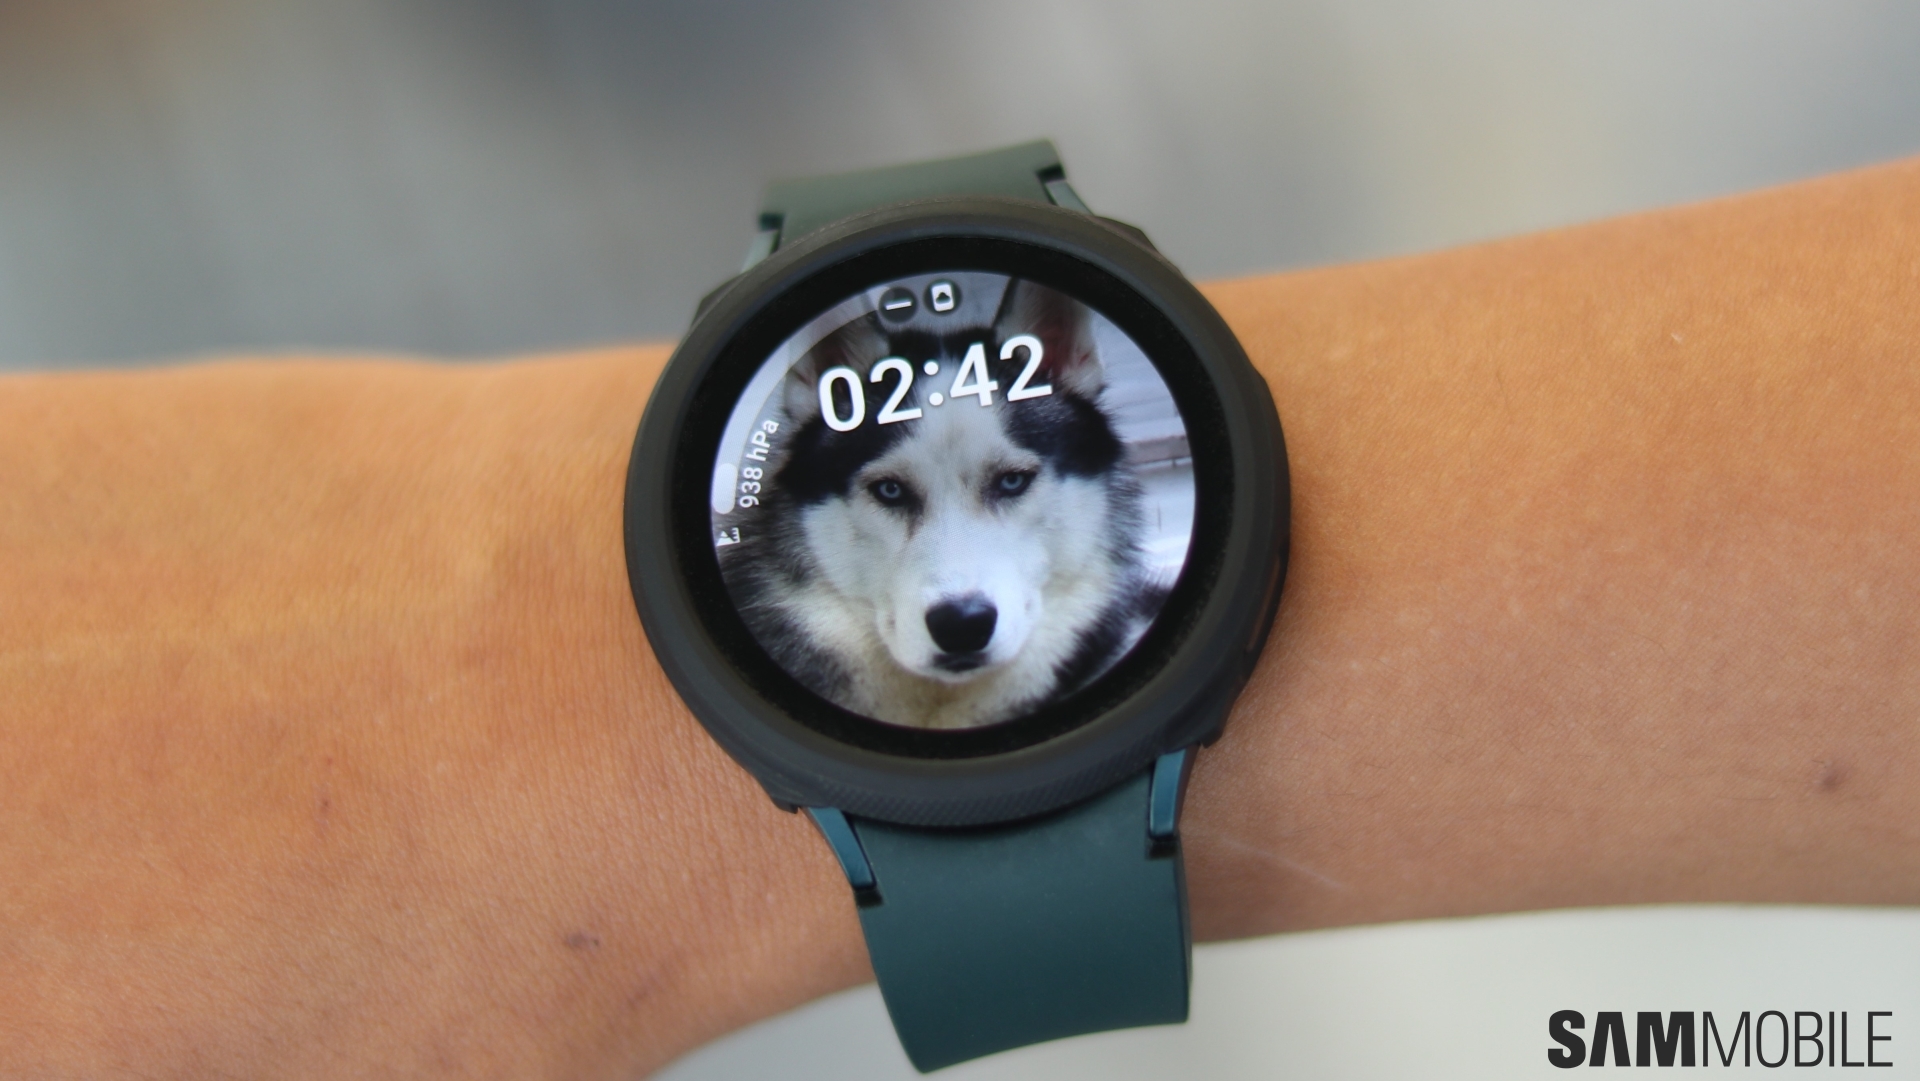 Đồng hồ Galaxy Watch là một điện thoại thông minh hoàn hảo không chỉ cho nhu cầu công việc mà còn để giải trí và thư giãn. Hãy trang bị cho mình một chiếc đồng hồ Galaxy Watch và tận hưởng những trải nghiệm tuyệt vời.